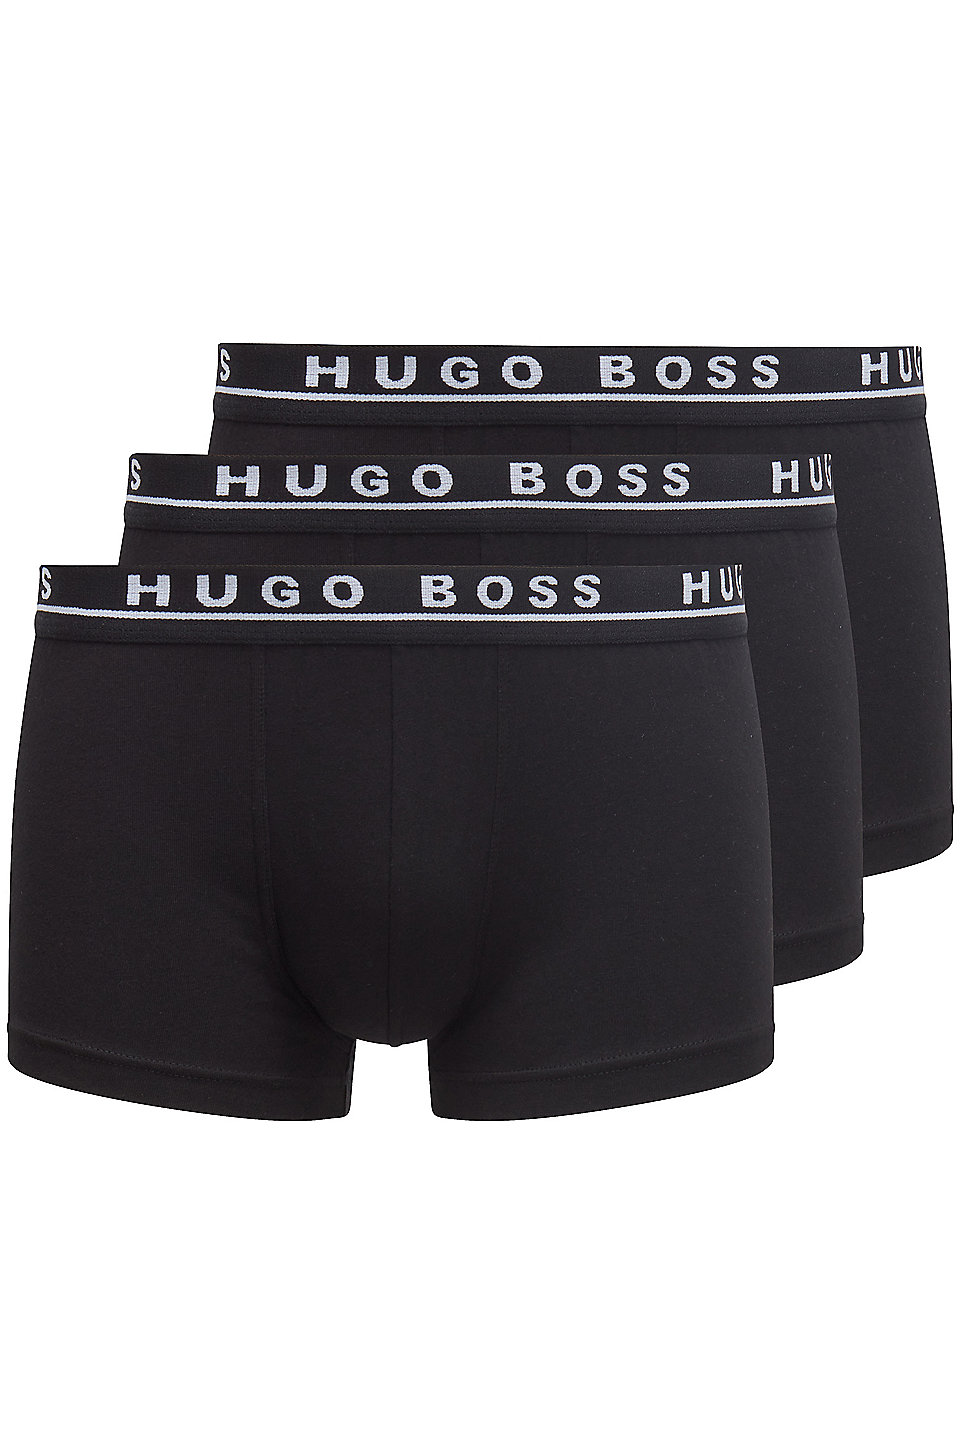 Hugo Boss BOSS Mens Trunk Signature